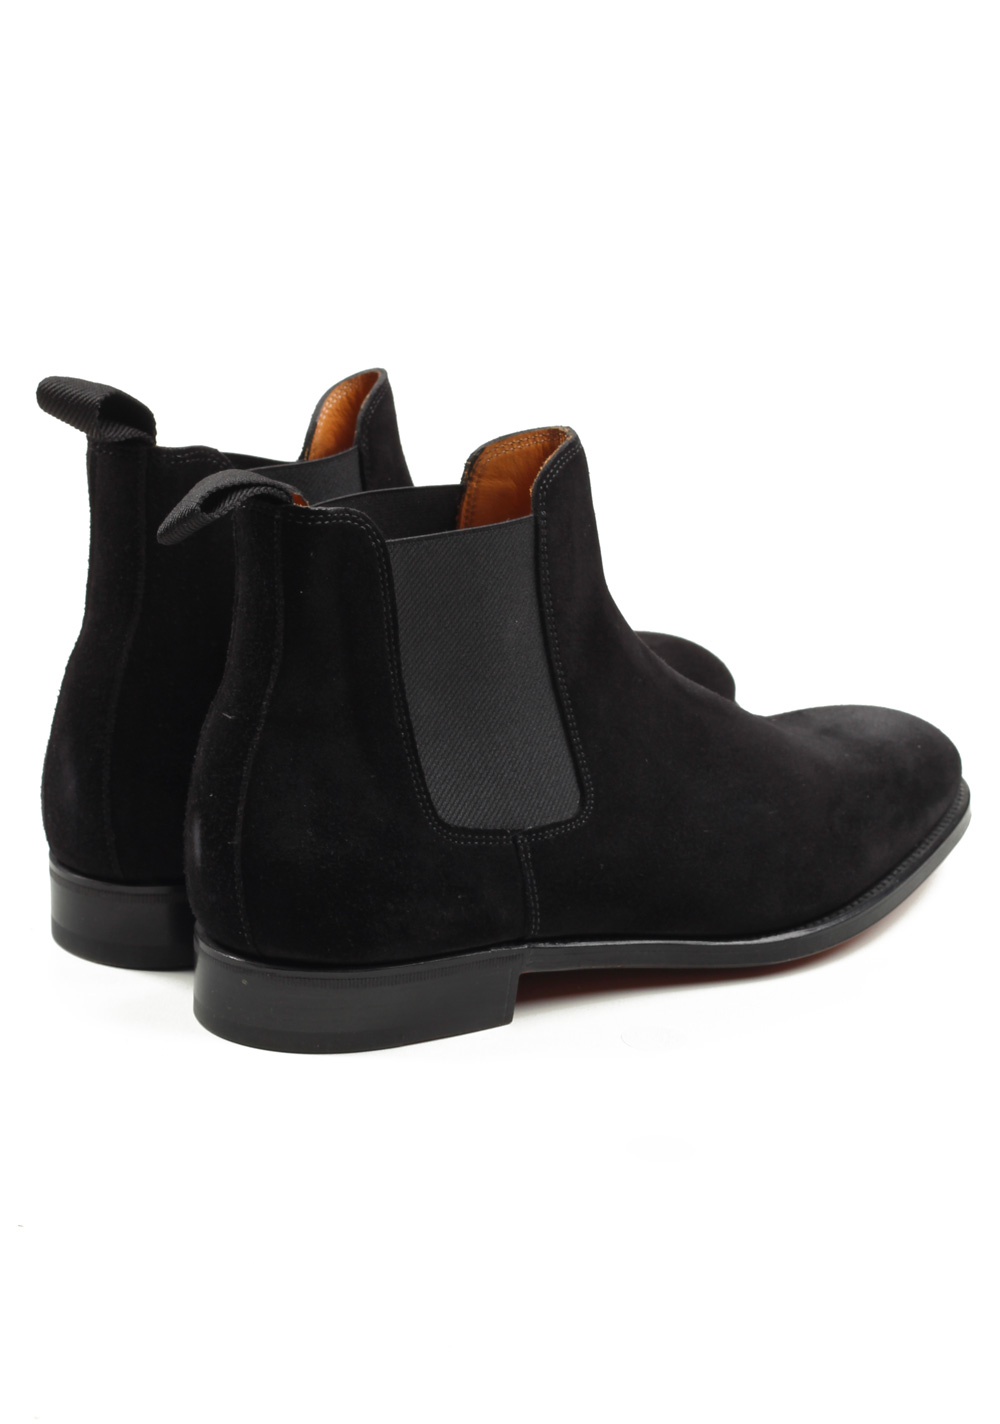 John Lobb Lawry Black Chelsea Boot Shoes Size 7 UK / 8 U.S. On 8695 Last | Costume Limité